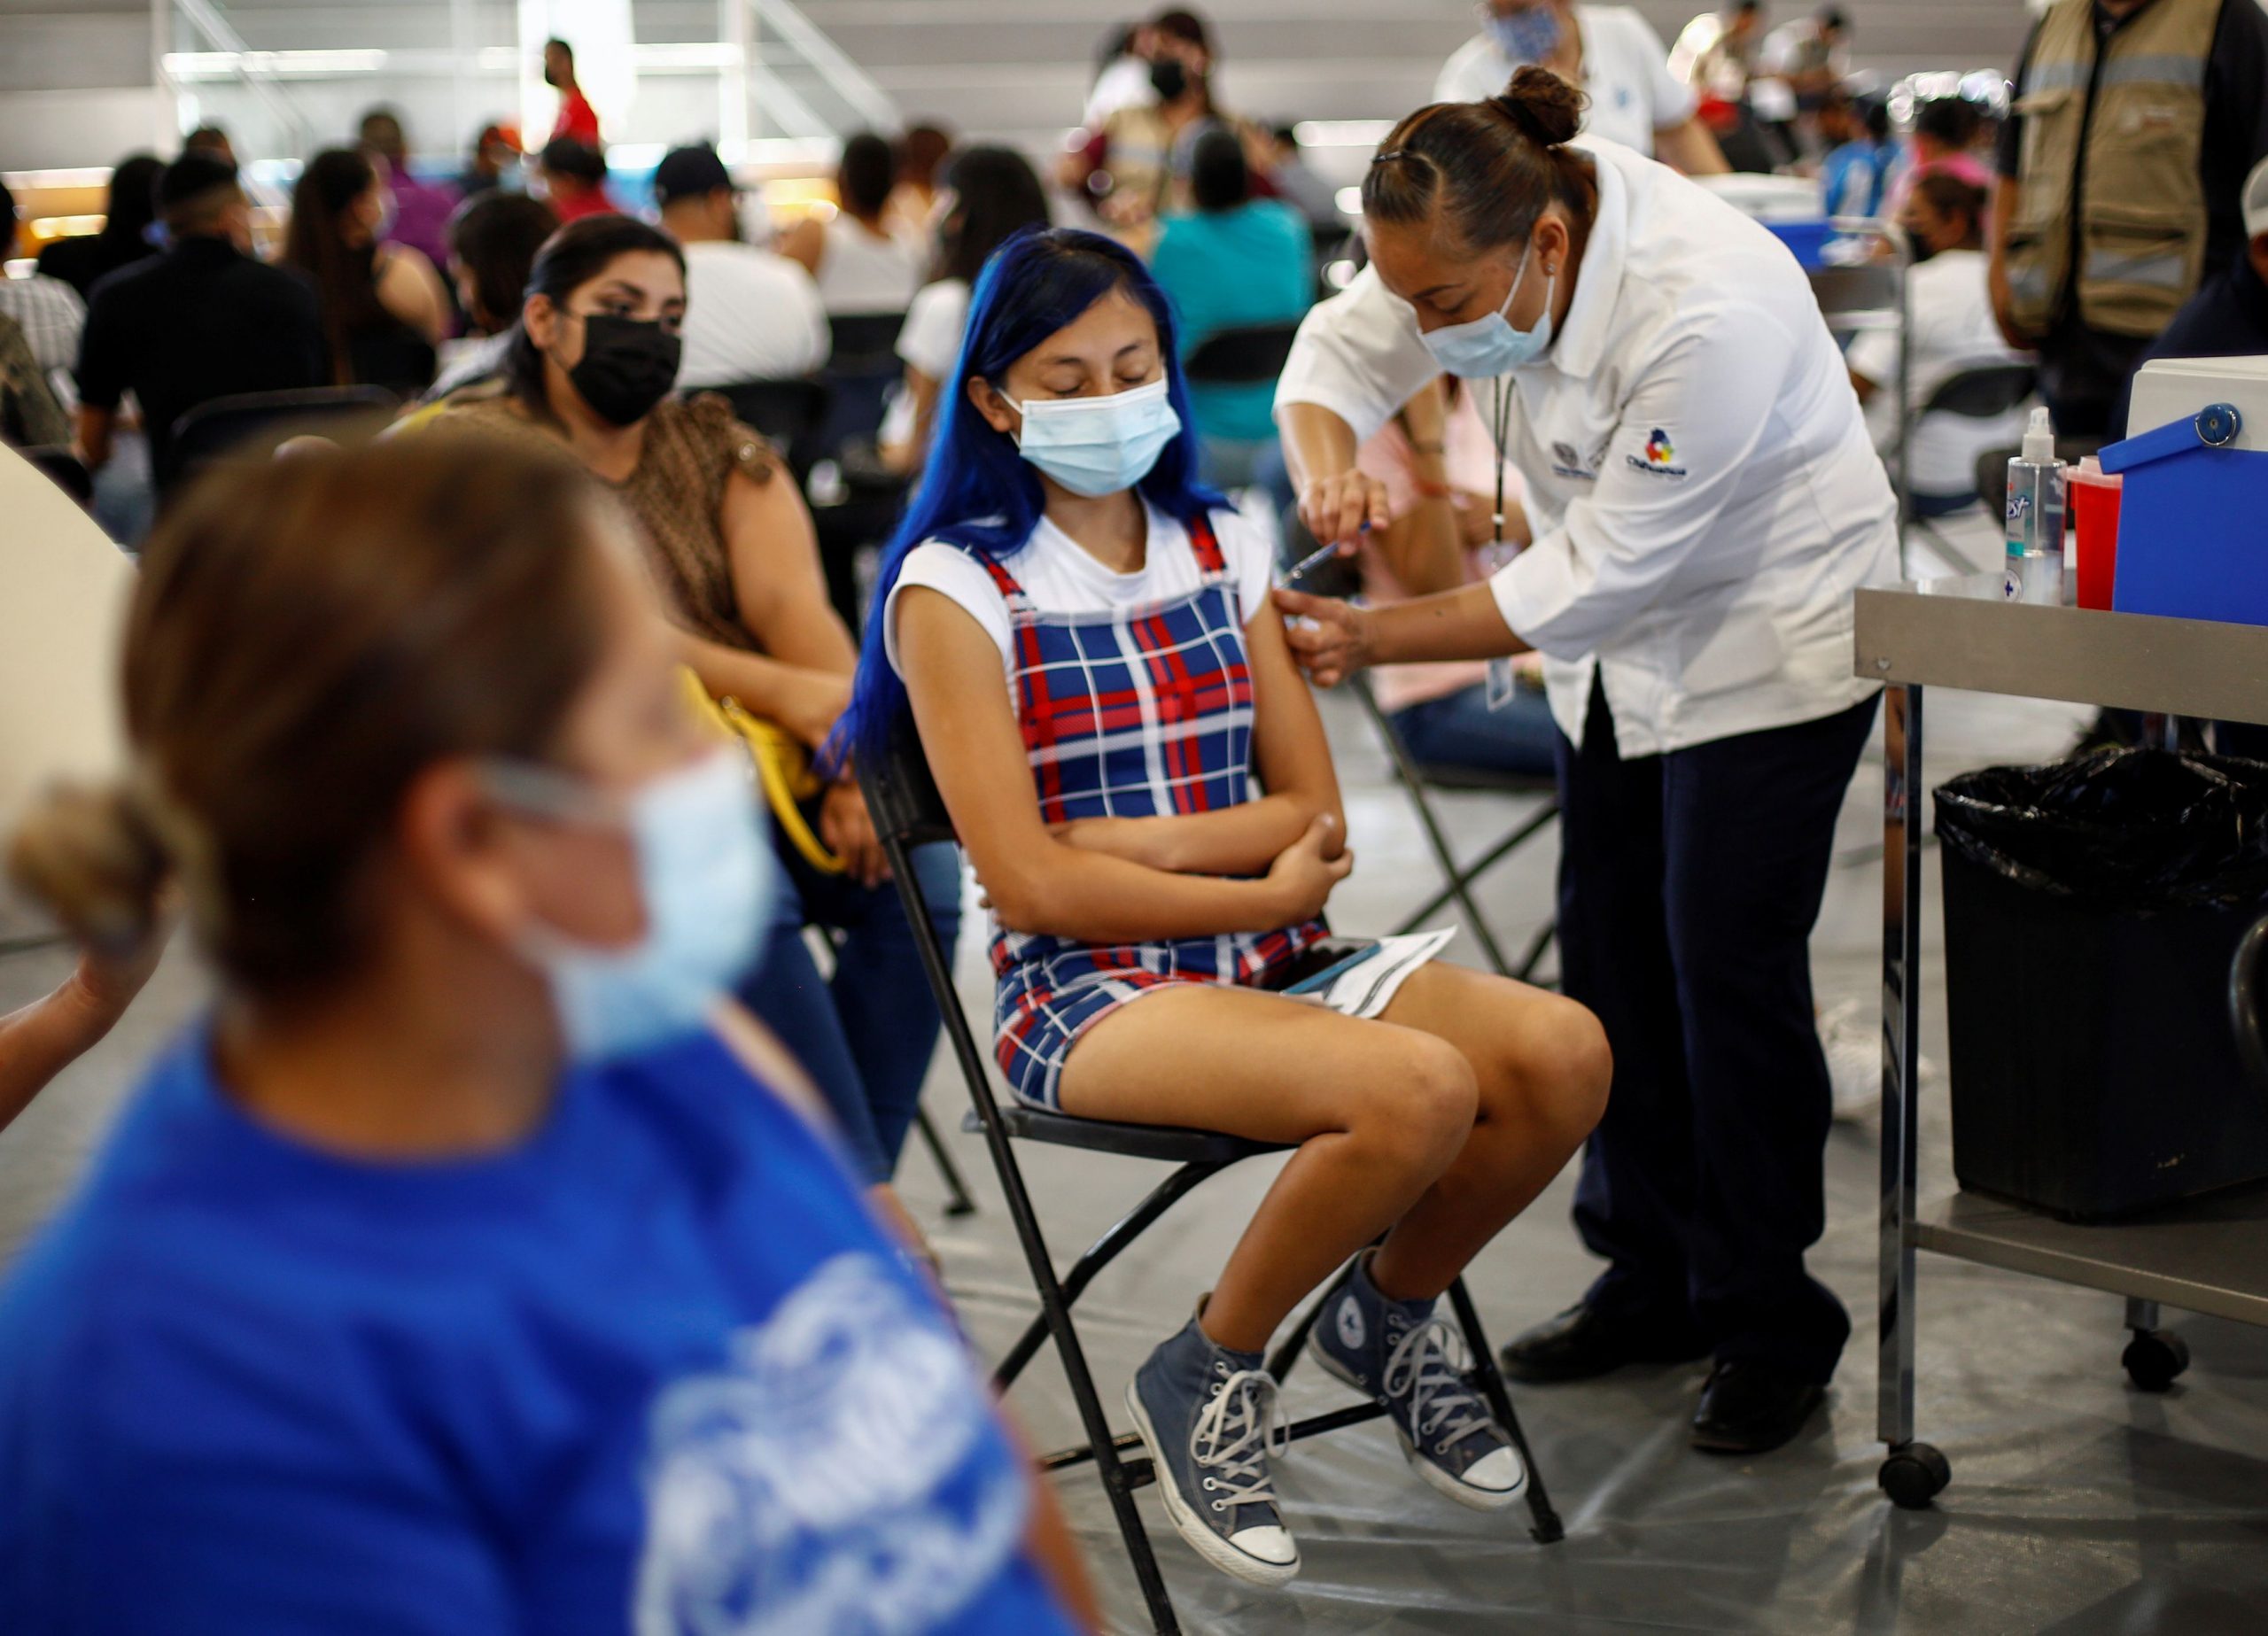 Οι ΗΠΑ δείχνουν τον δρόμο και στο μέτωπο των υποχρεωτικών εμβολιασμών